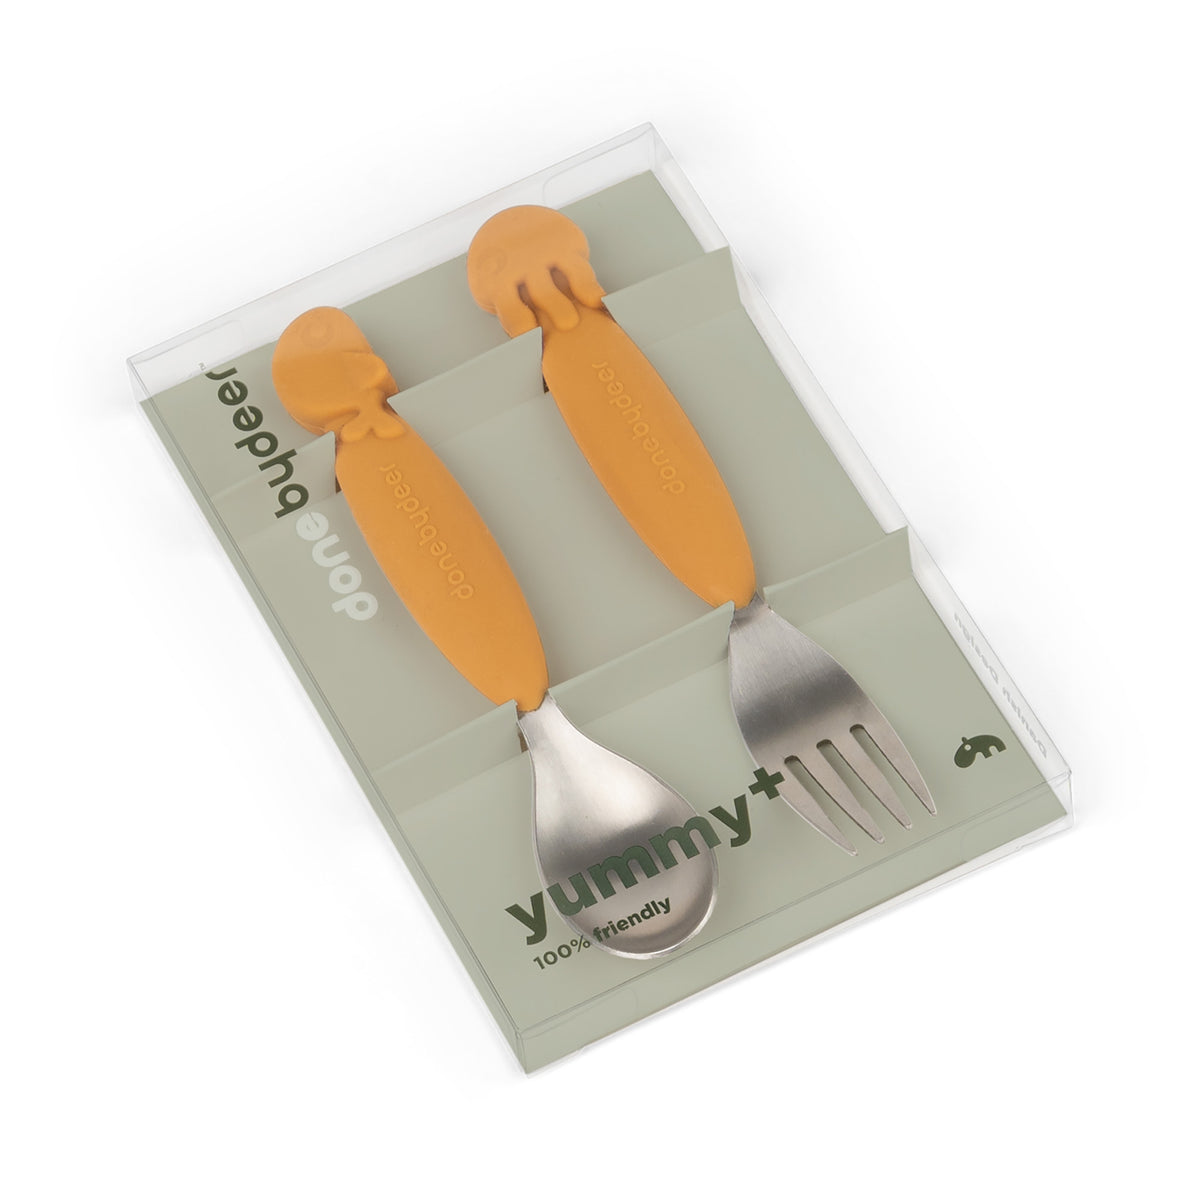 YummyPlus spoon & fork set - Sea friends - Mustard - Packaging